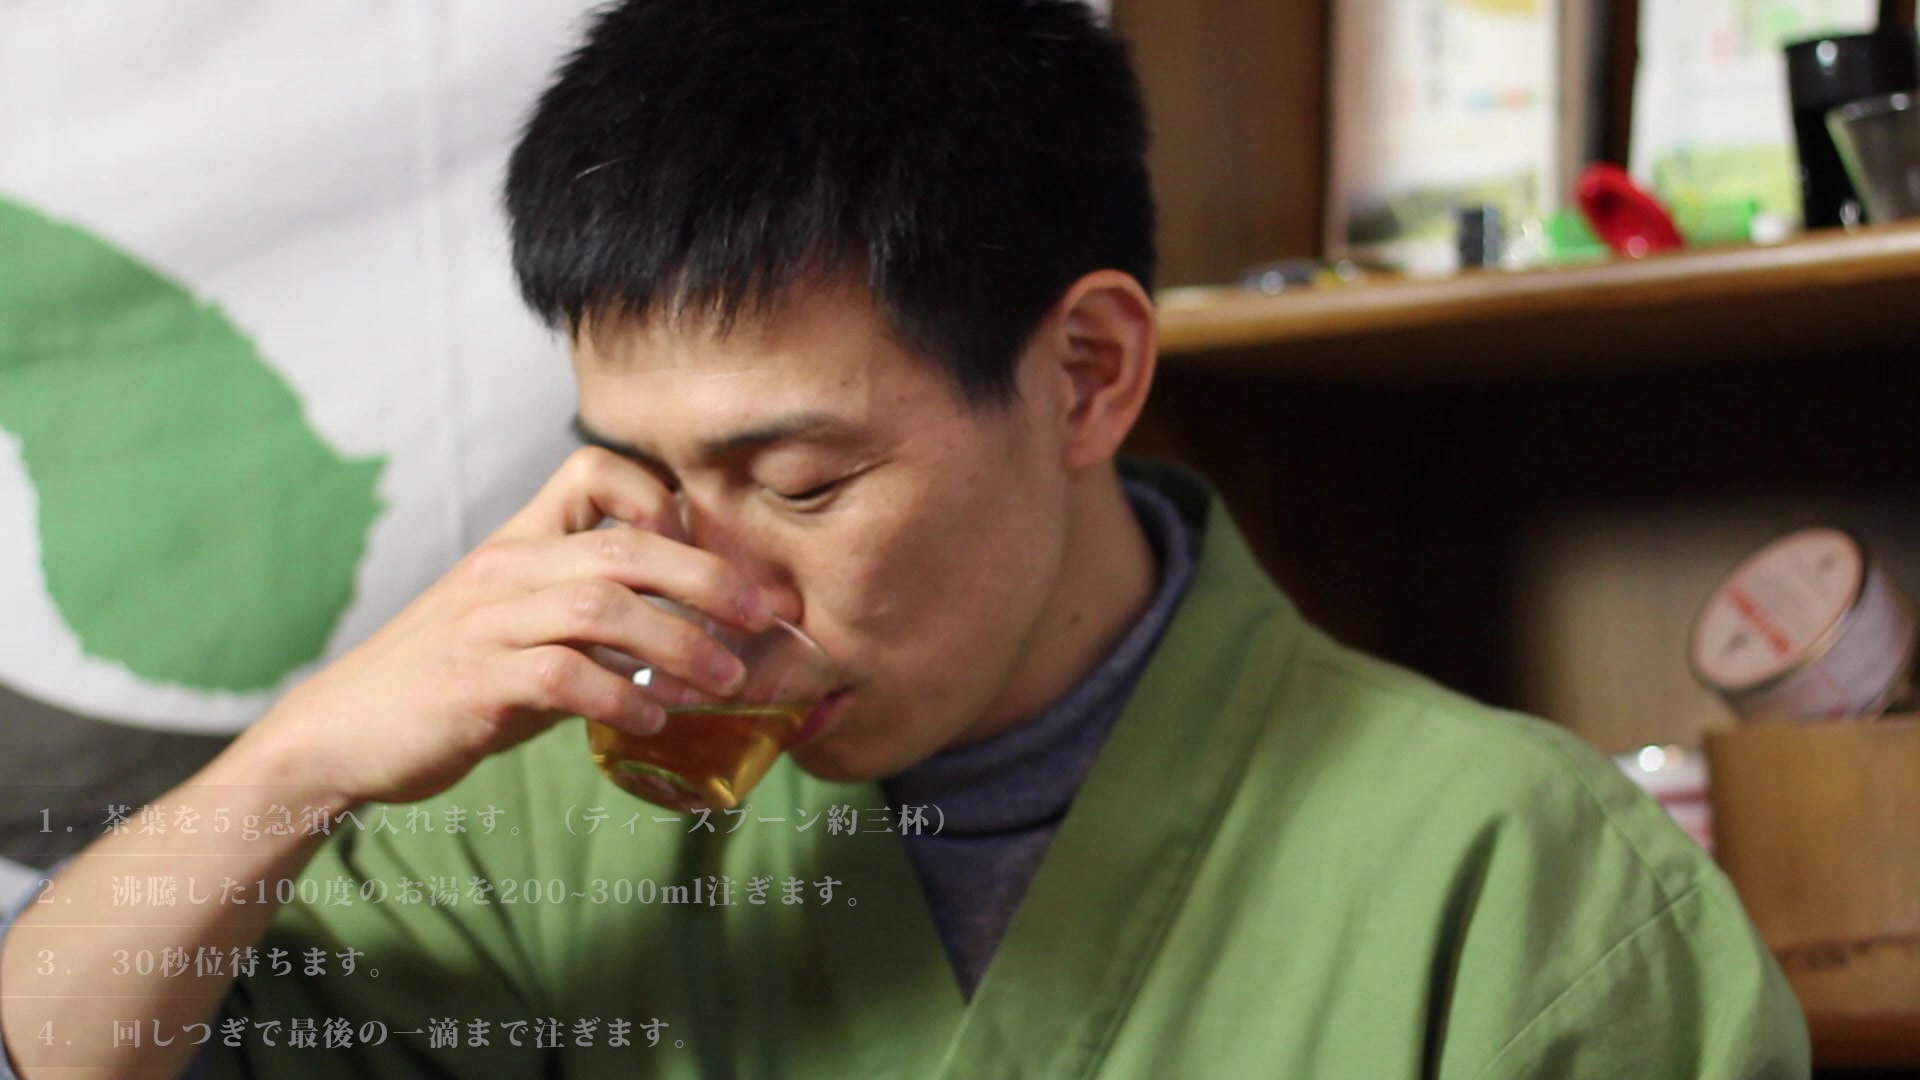 【動画】日本茶インストラクターによる「琥珀のほうじ茶」の淹れ方